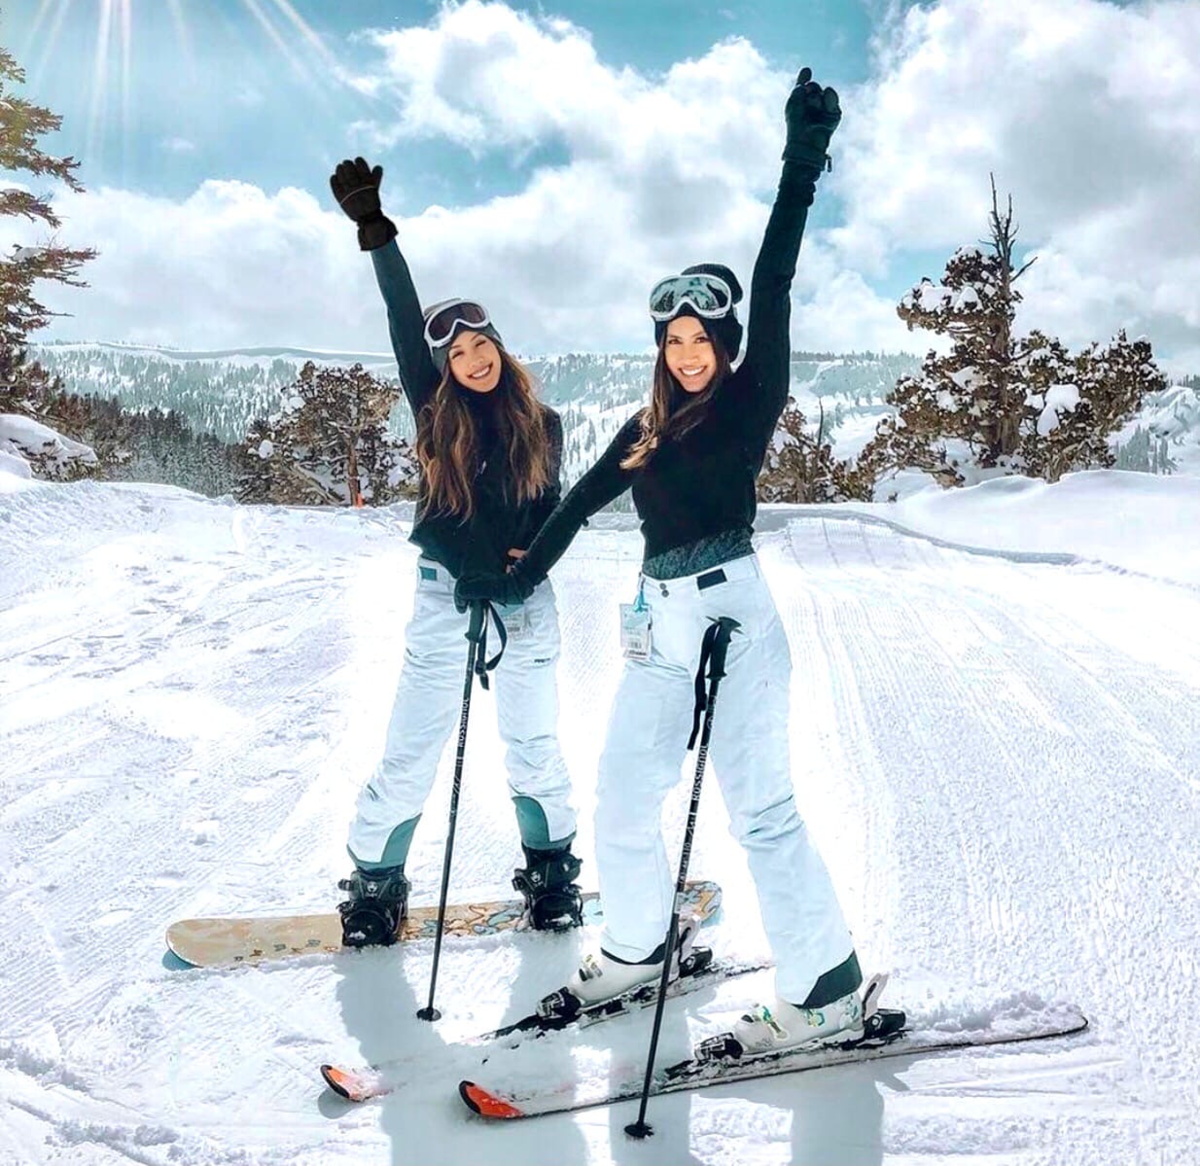 Катание на горных лыжах. Девушка на лыжах. Покататься на лыжах. Лыжи зимой. Покататься на горнолыжном курорте